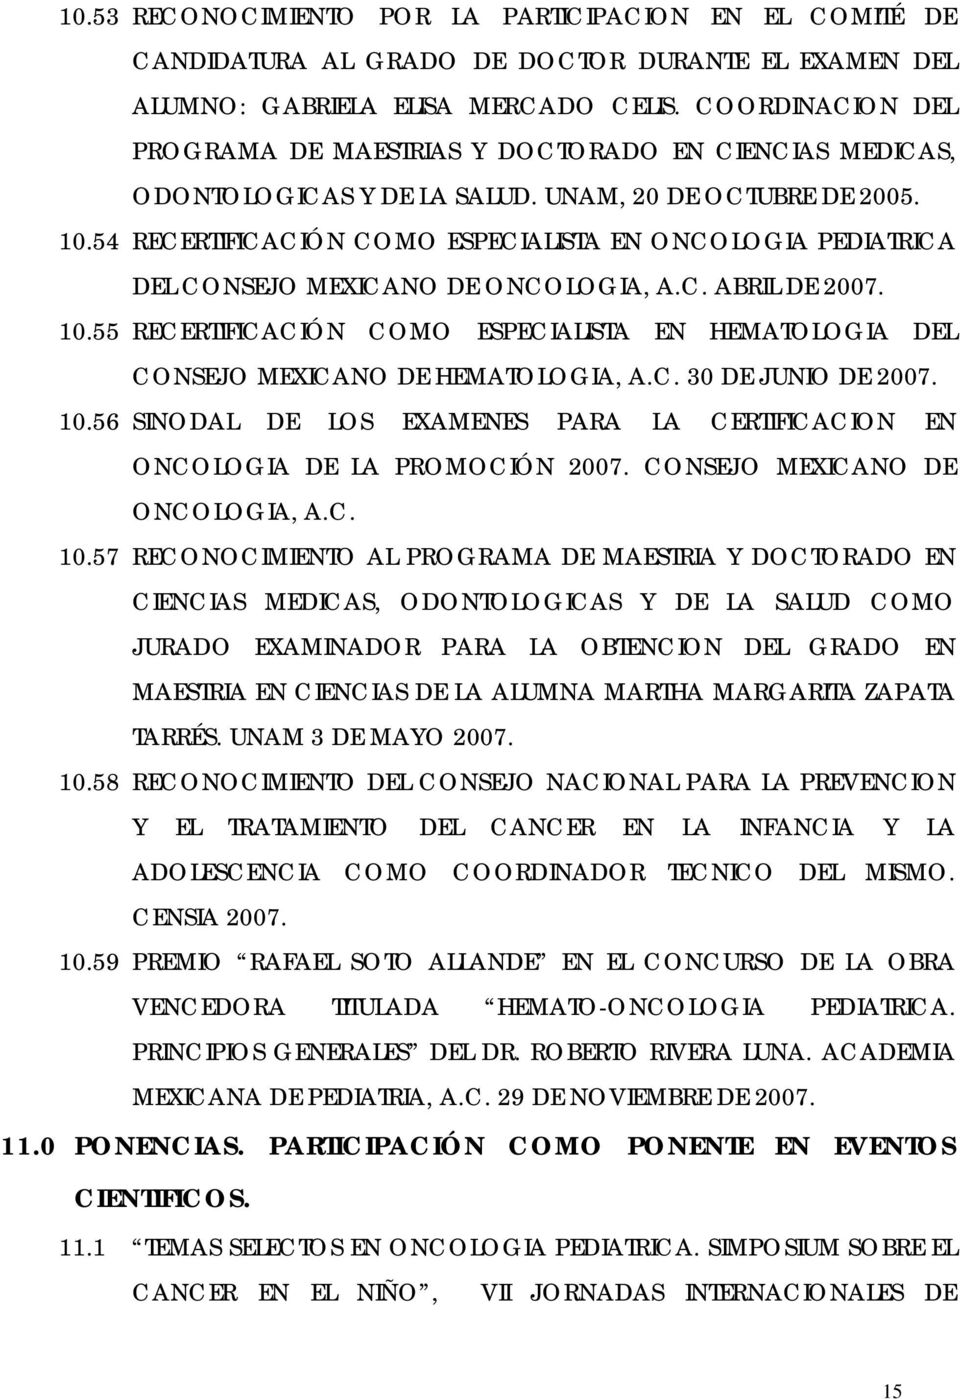 54 RECERTIFICACIÓN COMO ESPECIALISTA EN ONCOLOGIA PEDIATRICA DEL CONSEJO MEXICANO DE ONCOLOGIA, A.C. ABRIL DE 2007. 10.